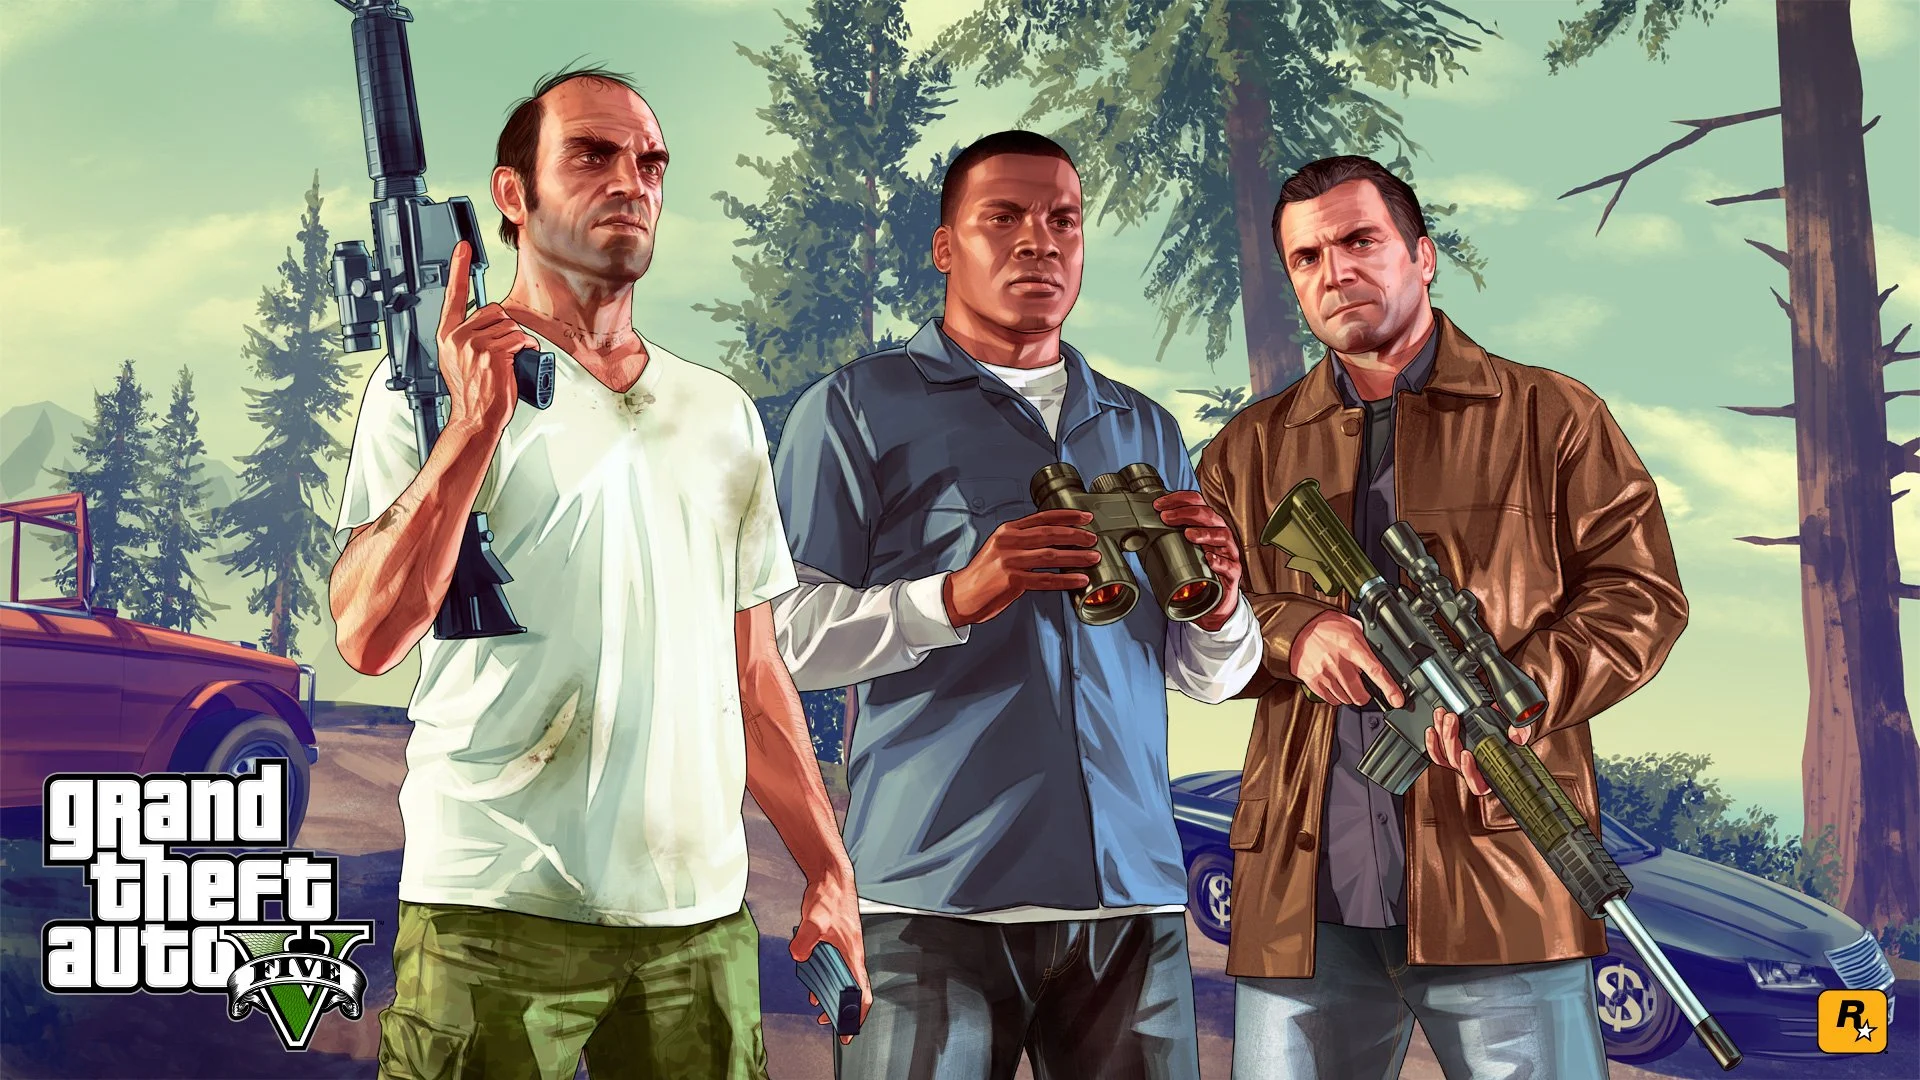 В магазины отгрузили 45 млн копий Grand Theft Auto 5 - фото 1